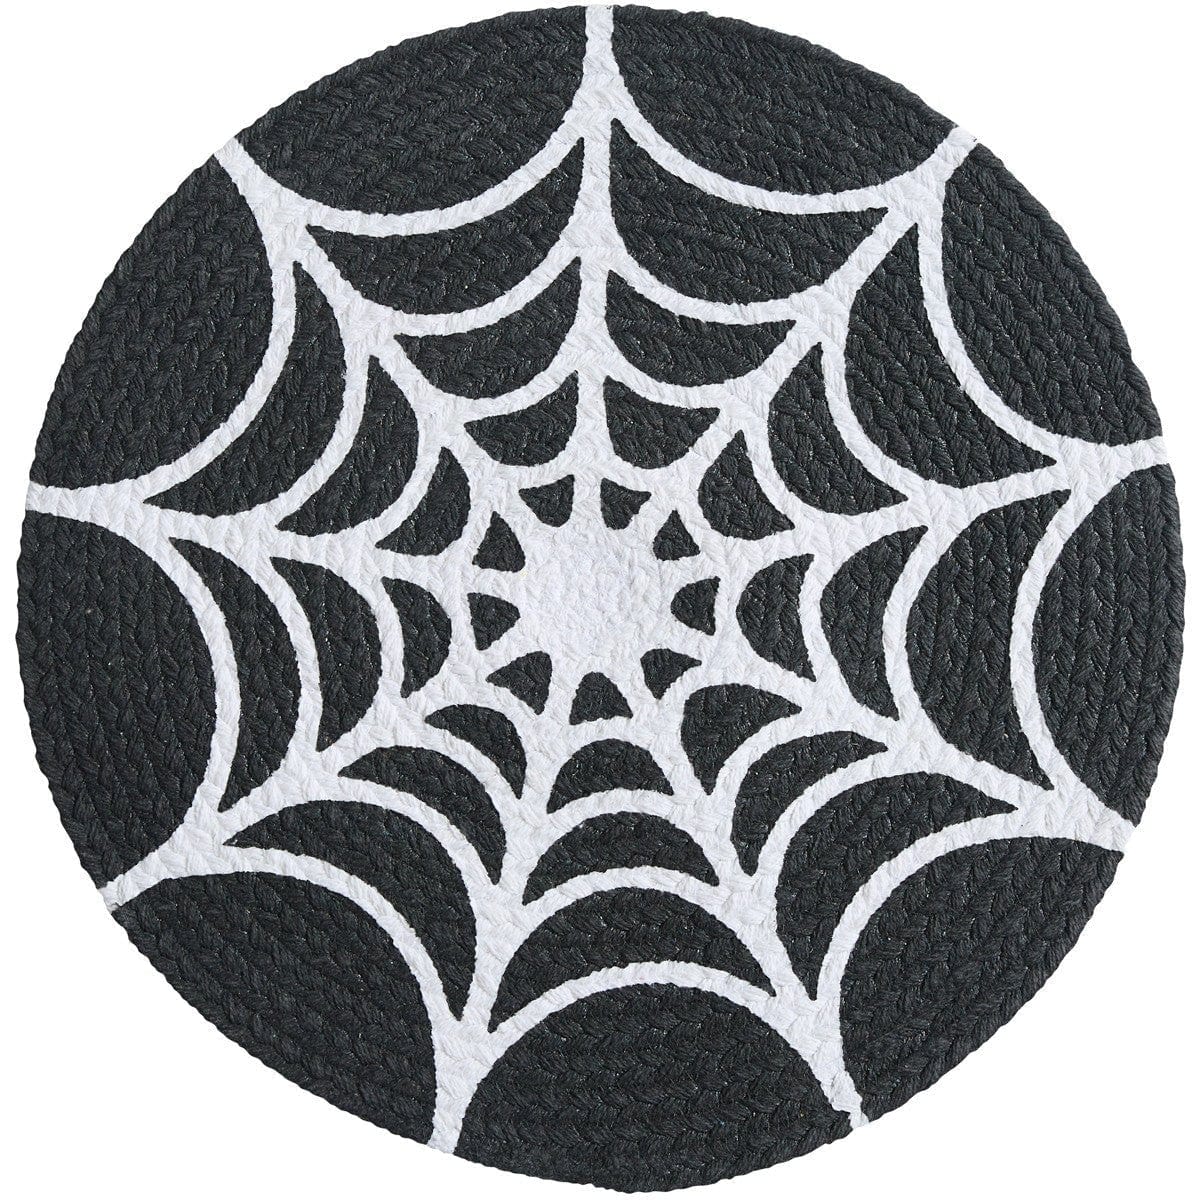 Braided Spider Web Placemat Round-Park Designs-The Village Merchant